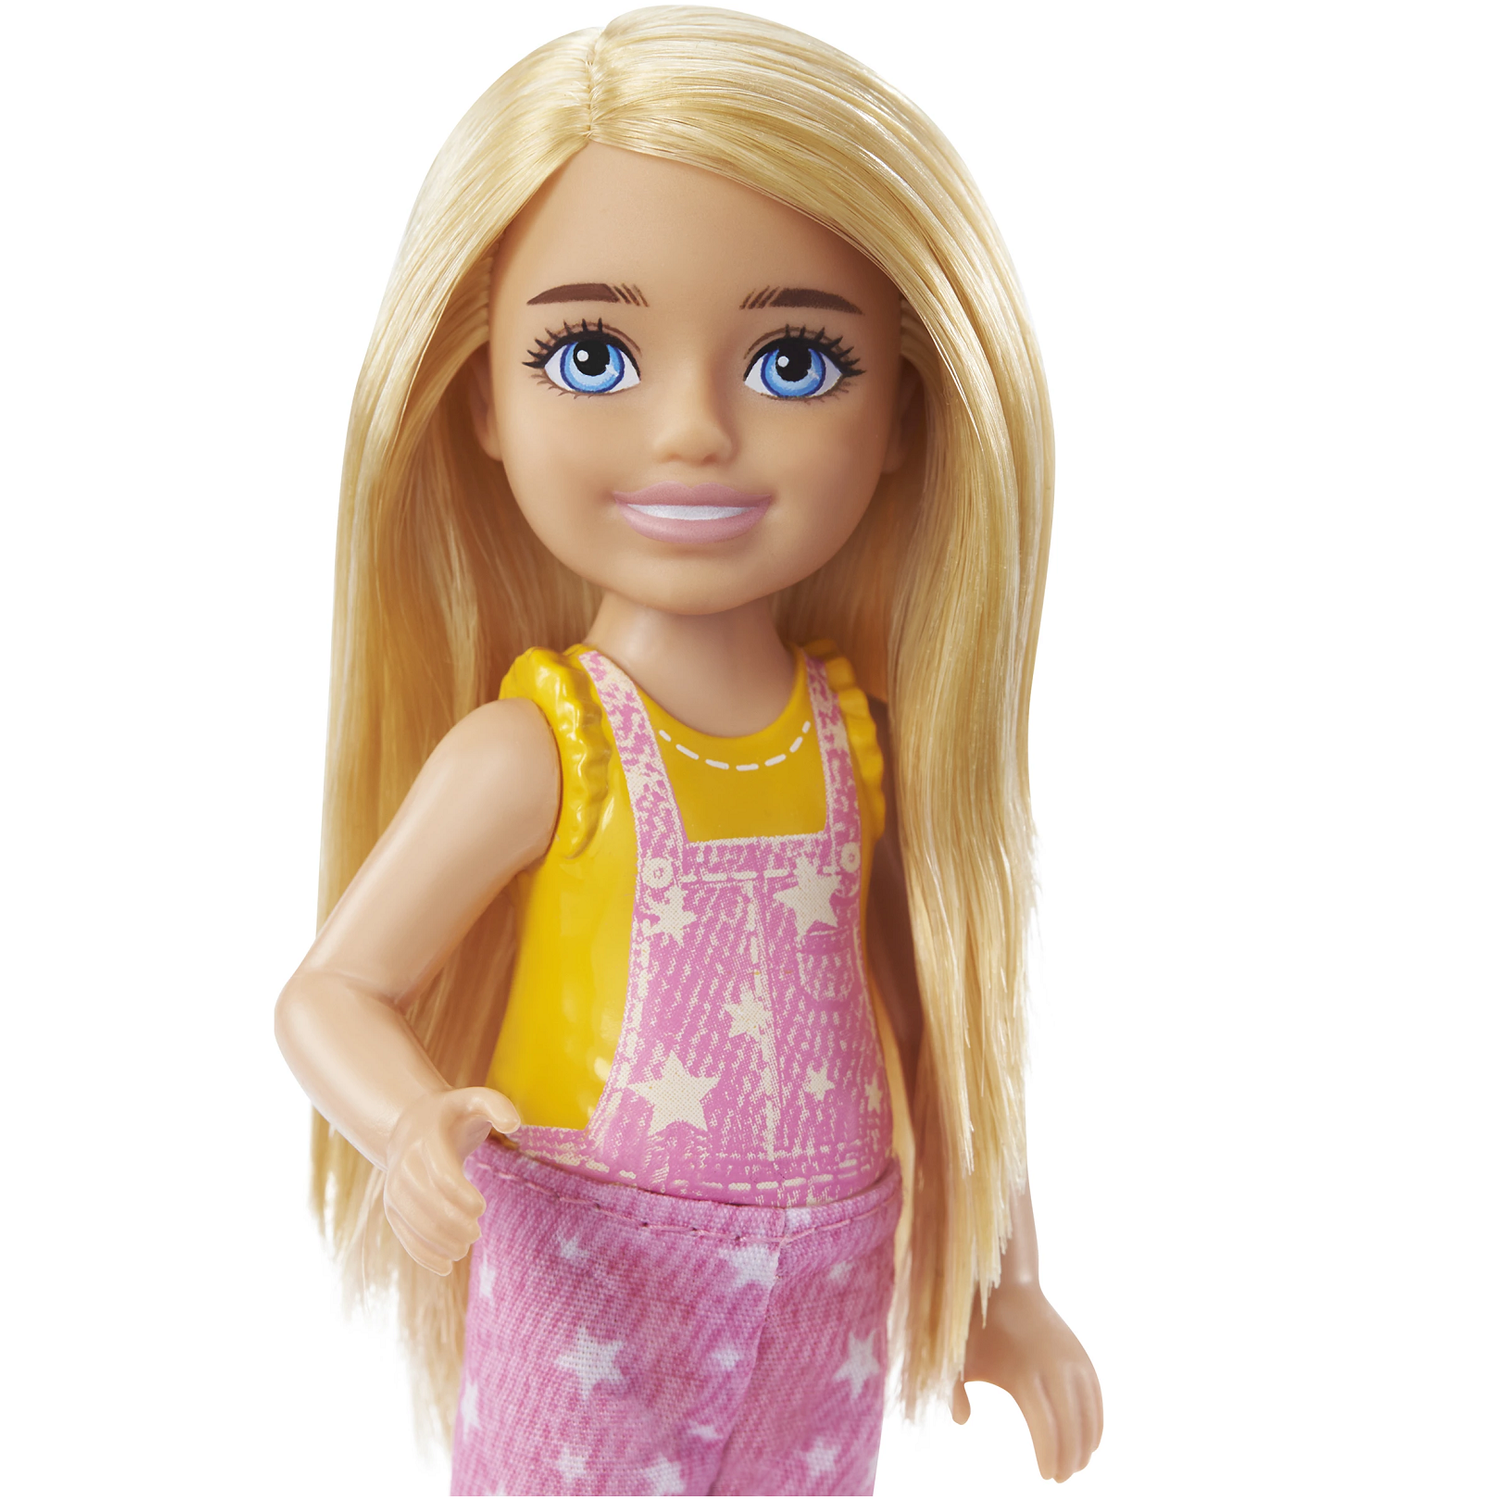 Кукла Barbie Color Reveal Челси в непрозрачной упаковке (Сюрприз) HDN77 HDN77 - фото 2